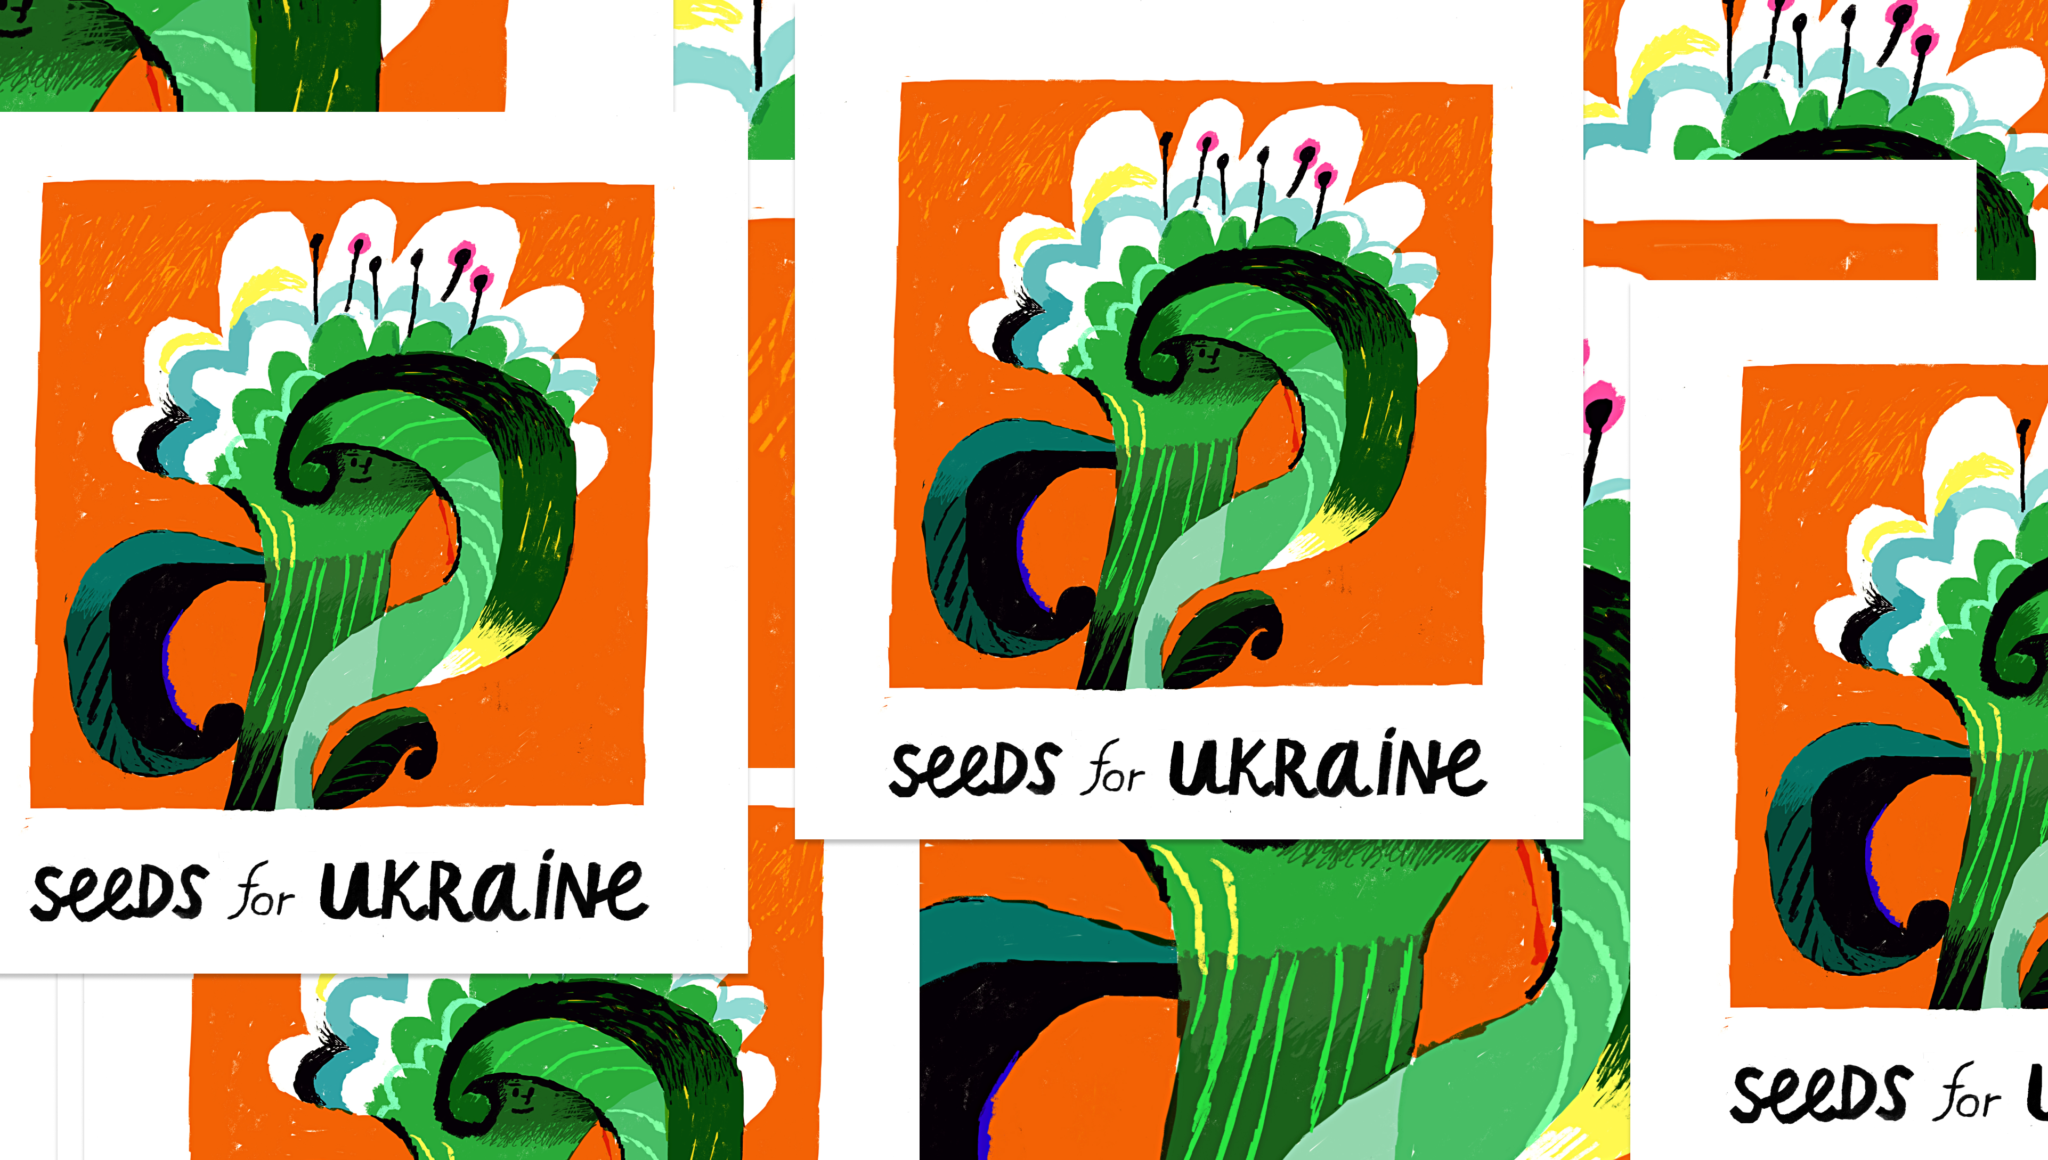 Seeds for Ukraine: небайдужих закликають долучитися до збору насіння для України